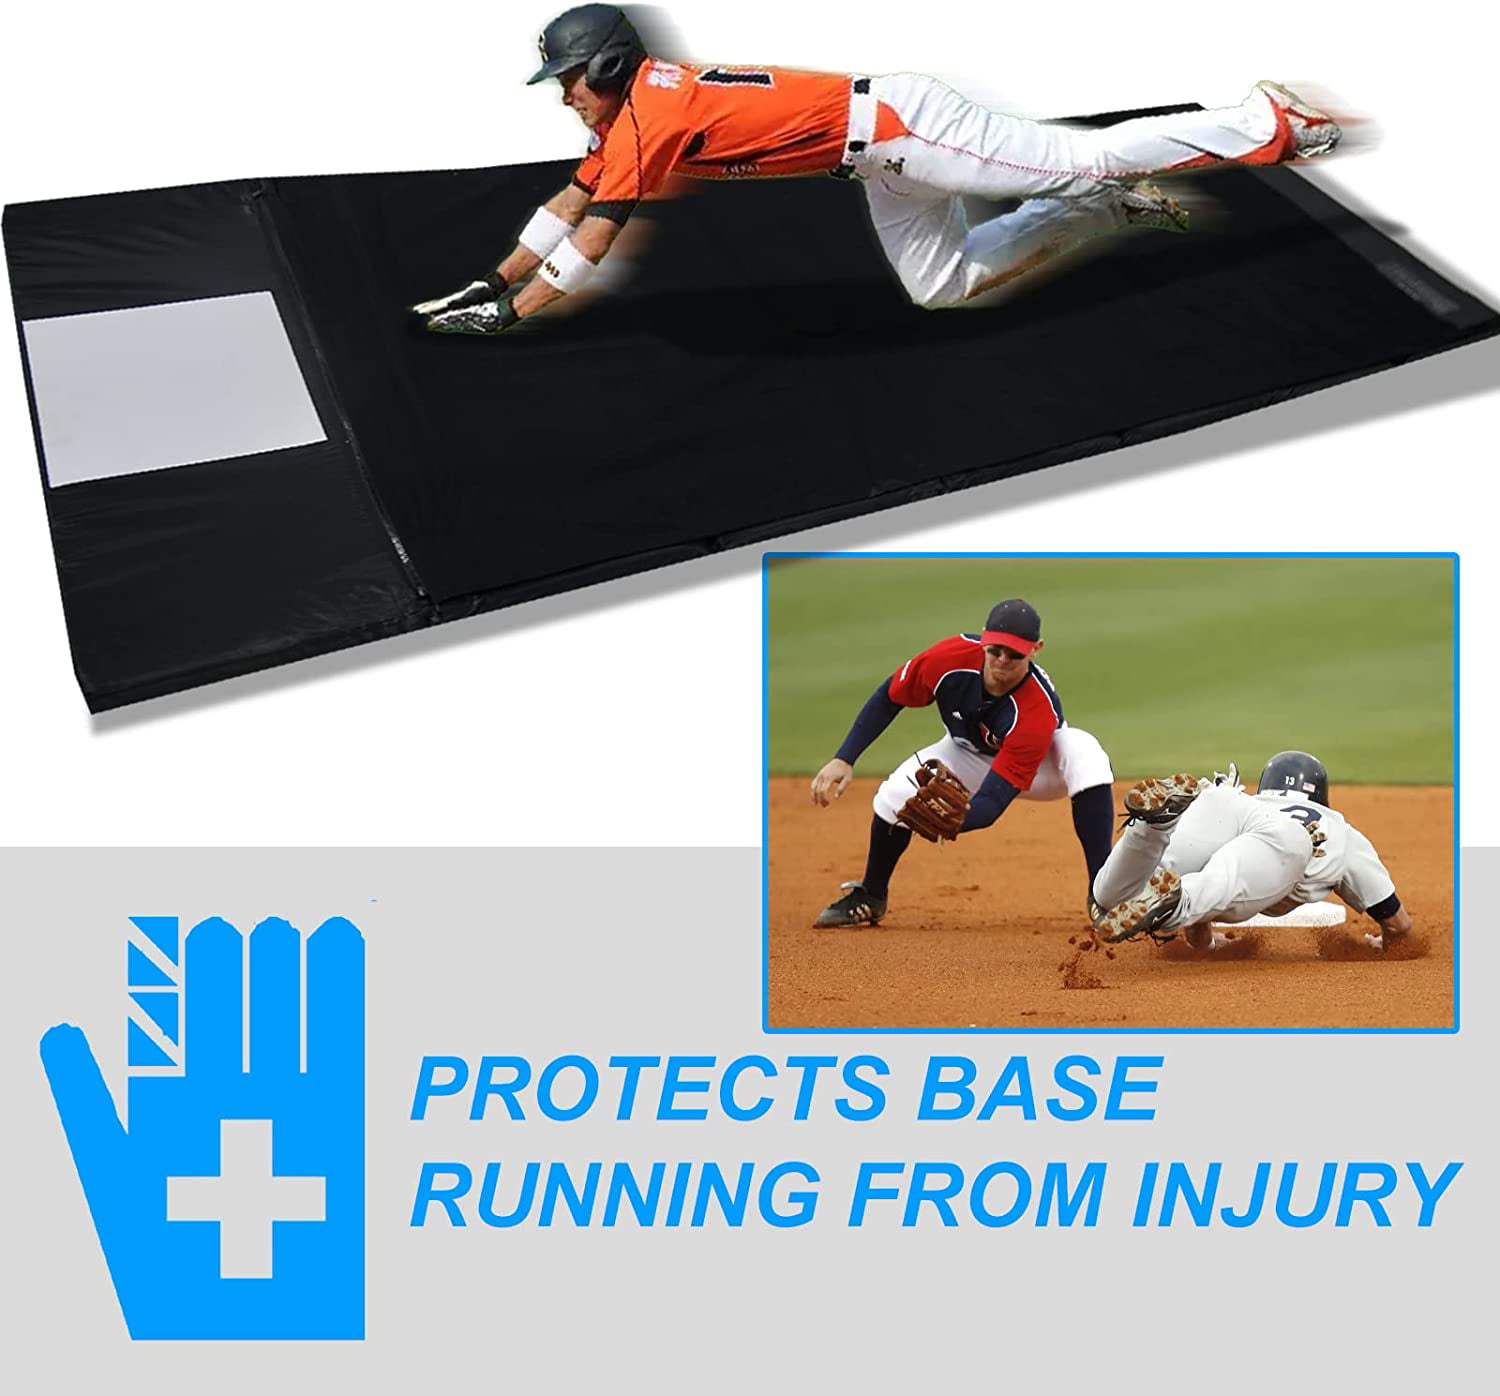 Sliding: Regular Softball Slide 